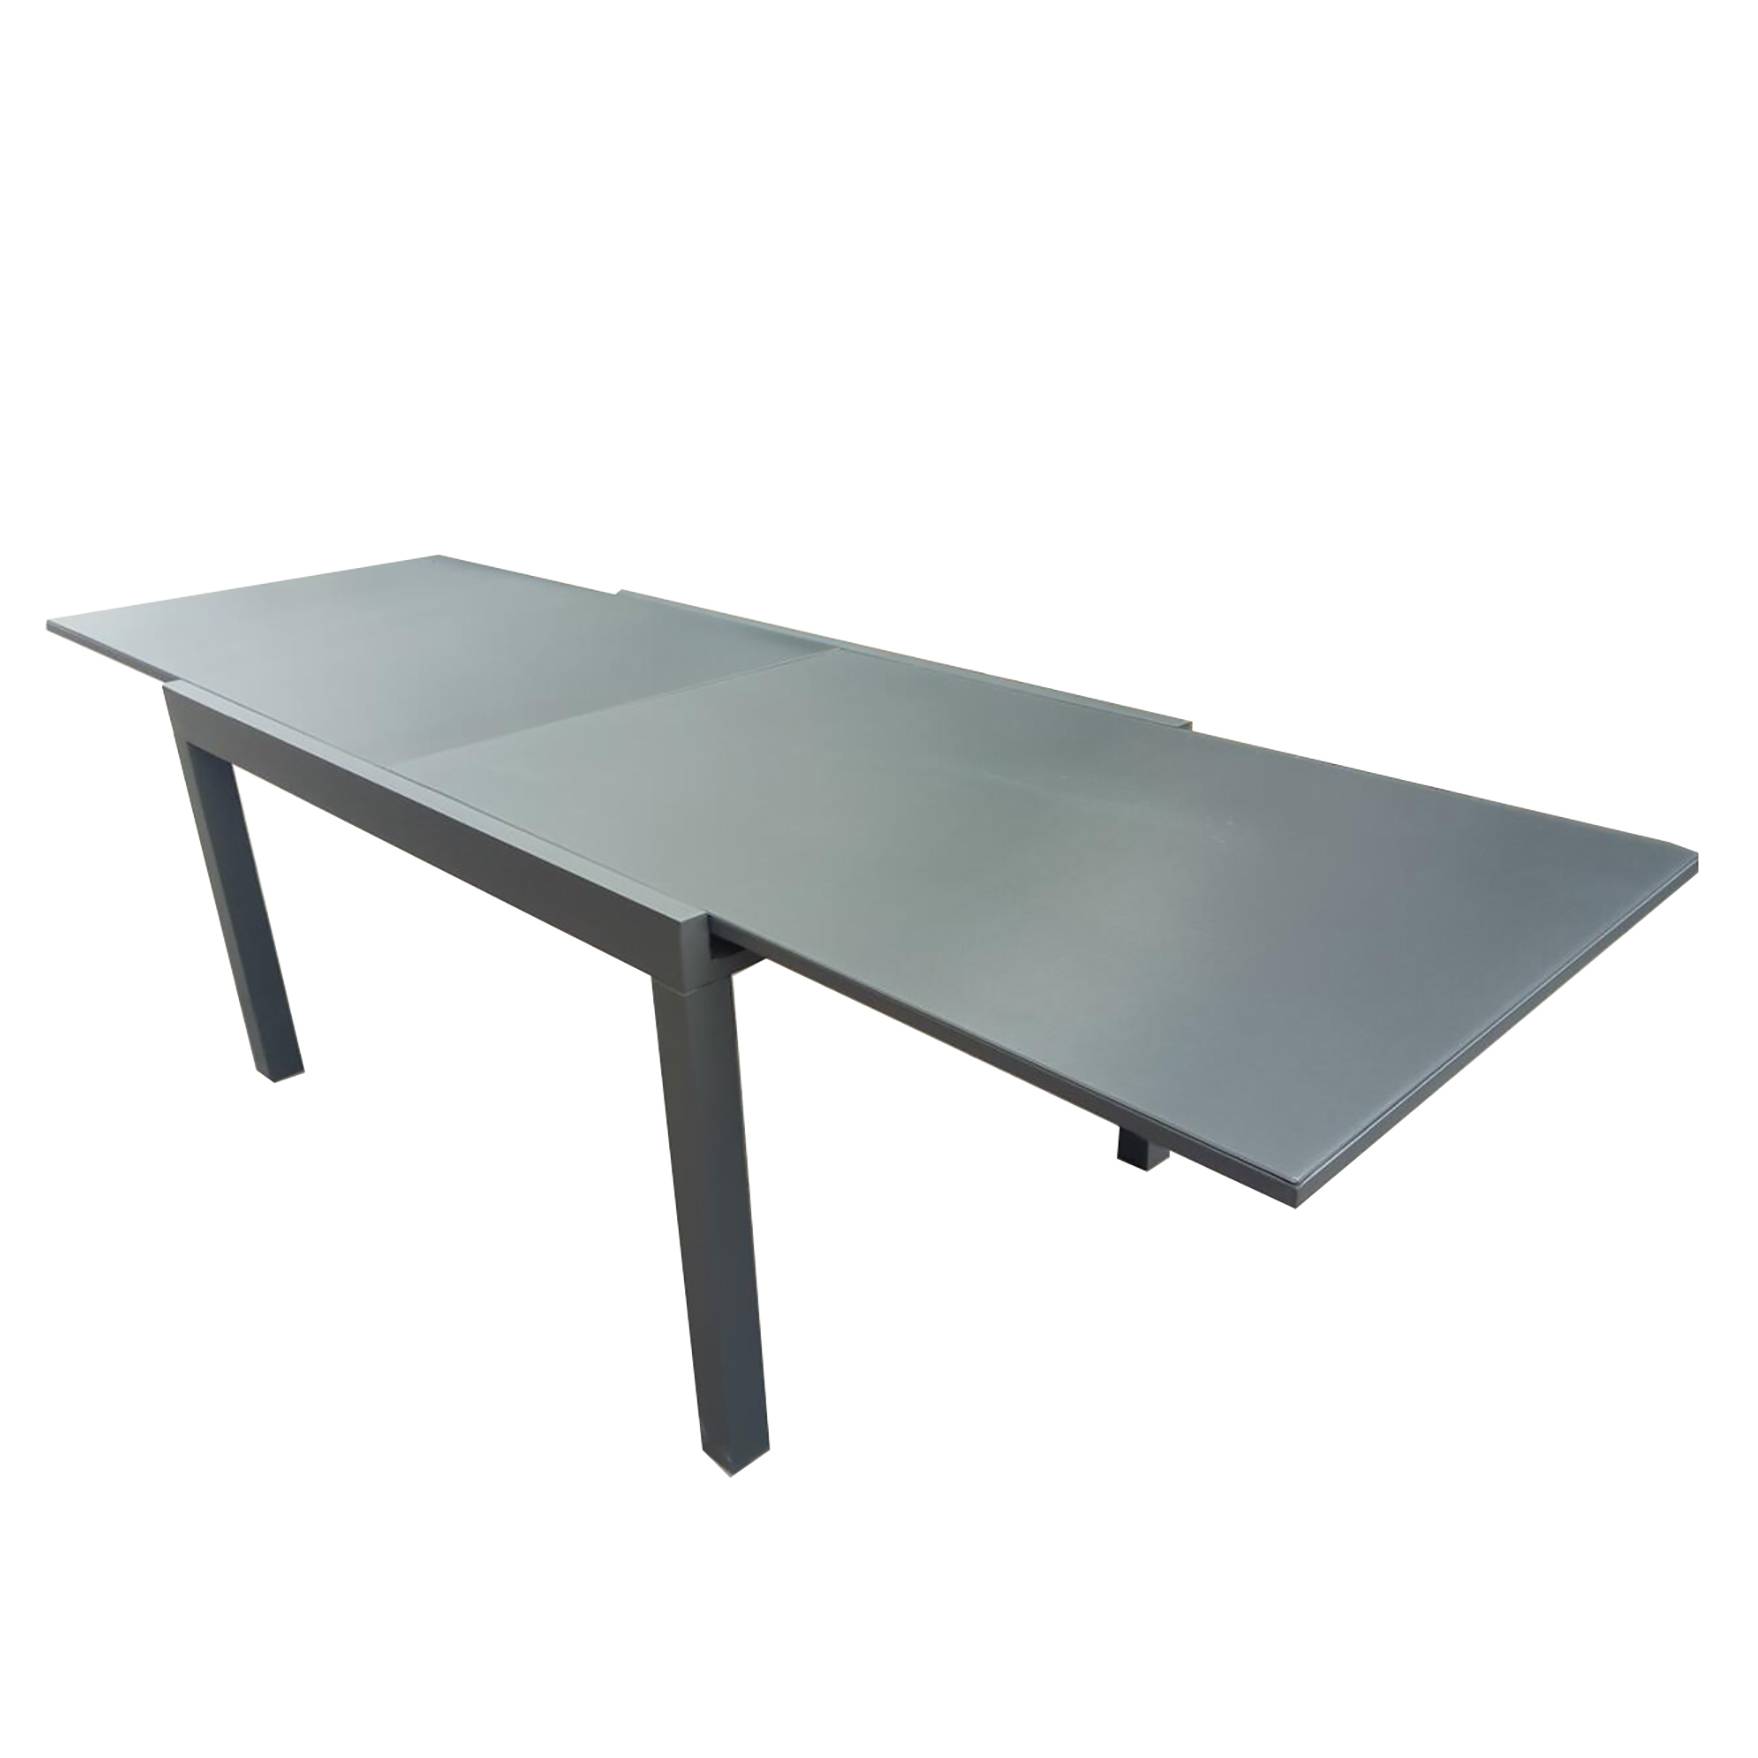 Meaafale i fafo Aluminum Extension Table Lau'a'ai laulau Ofisa